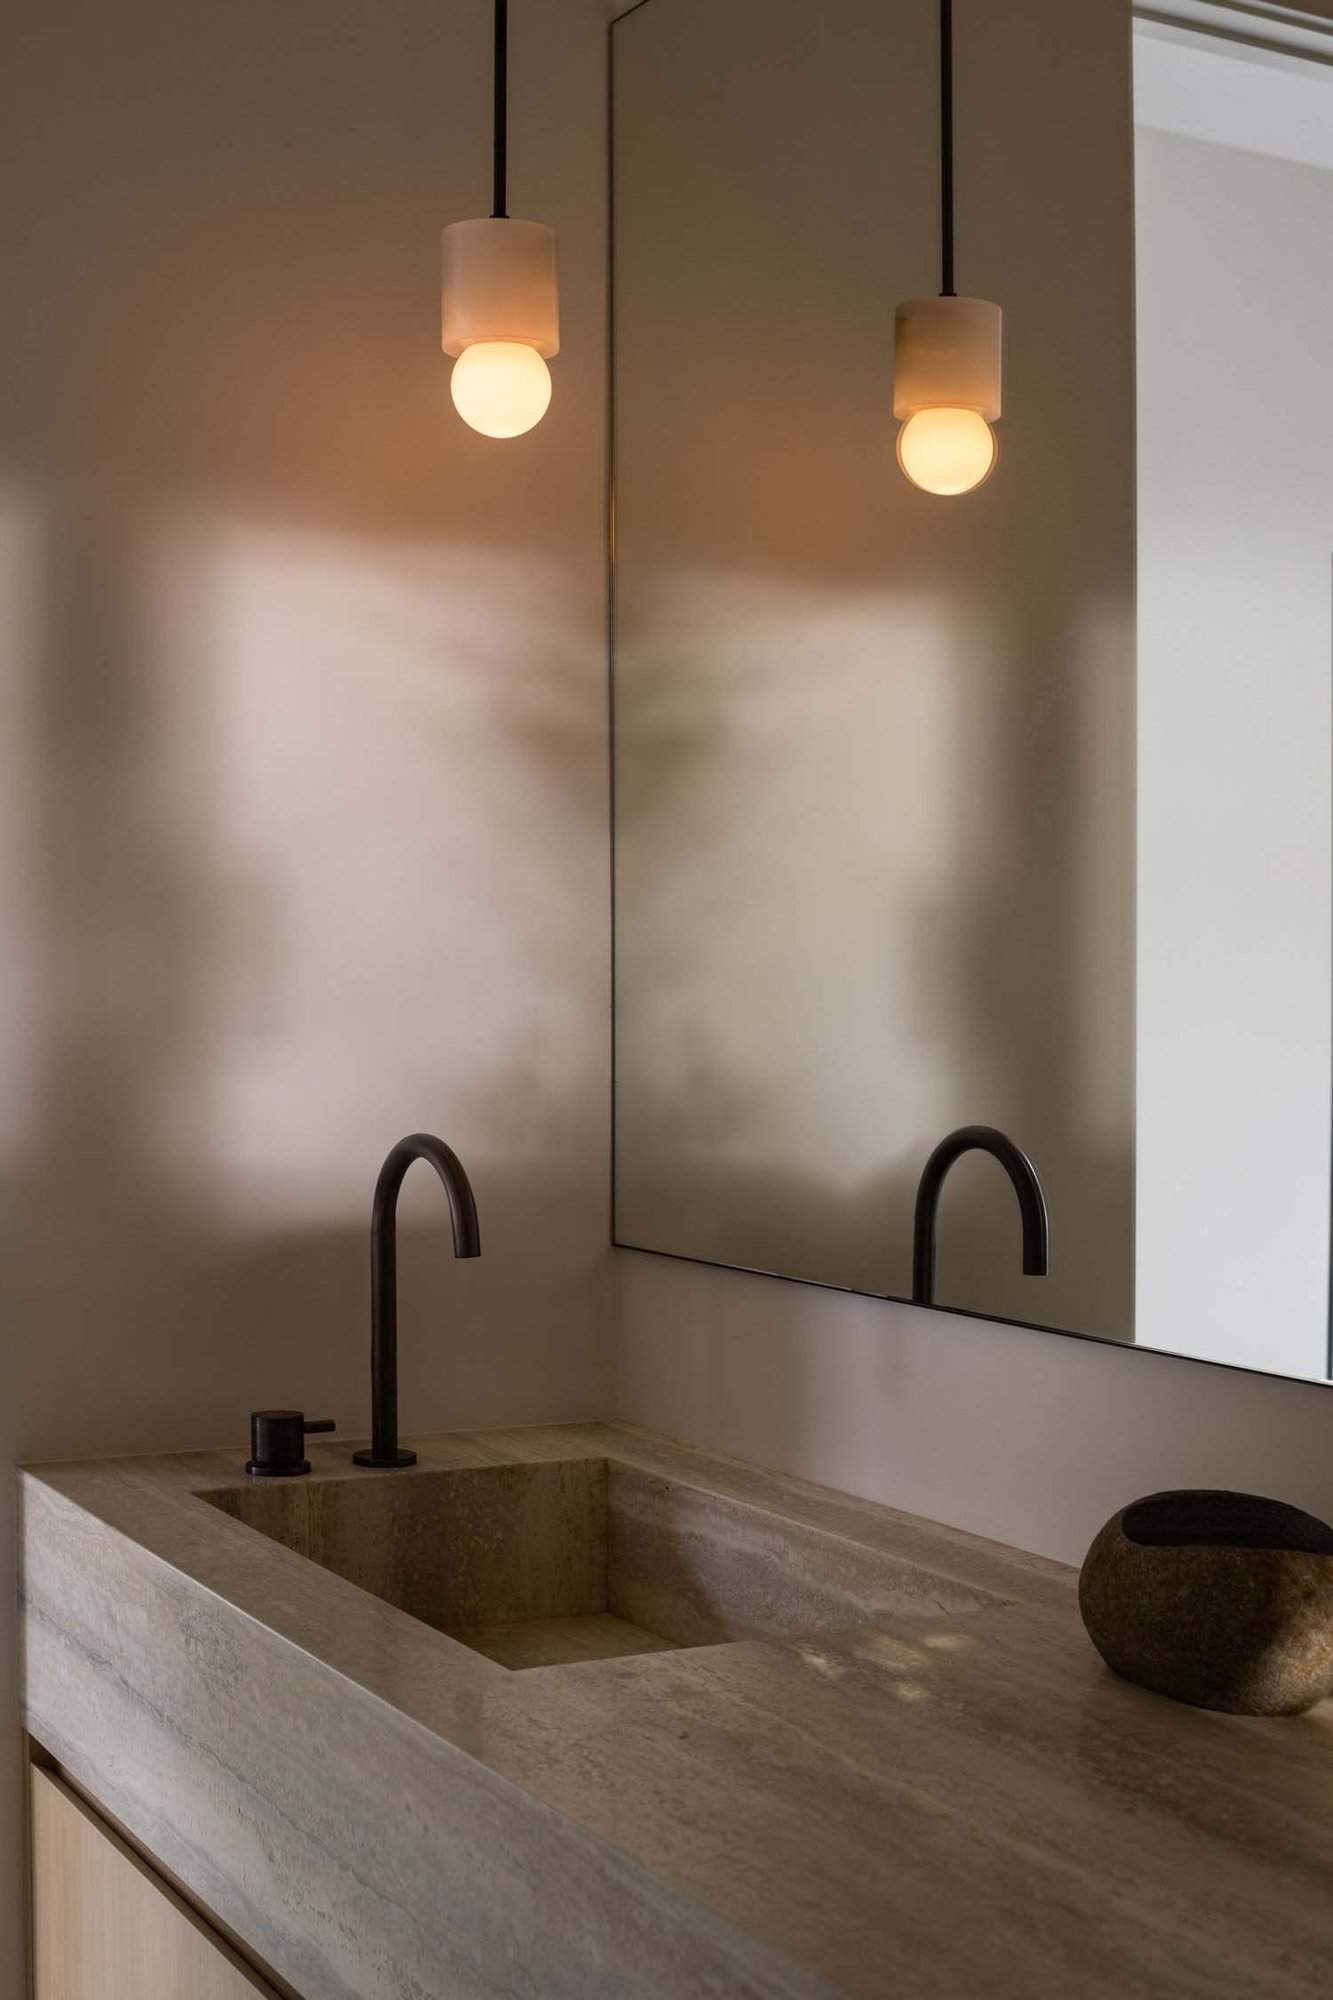 midcentury modern bathroom vanity